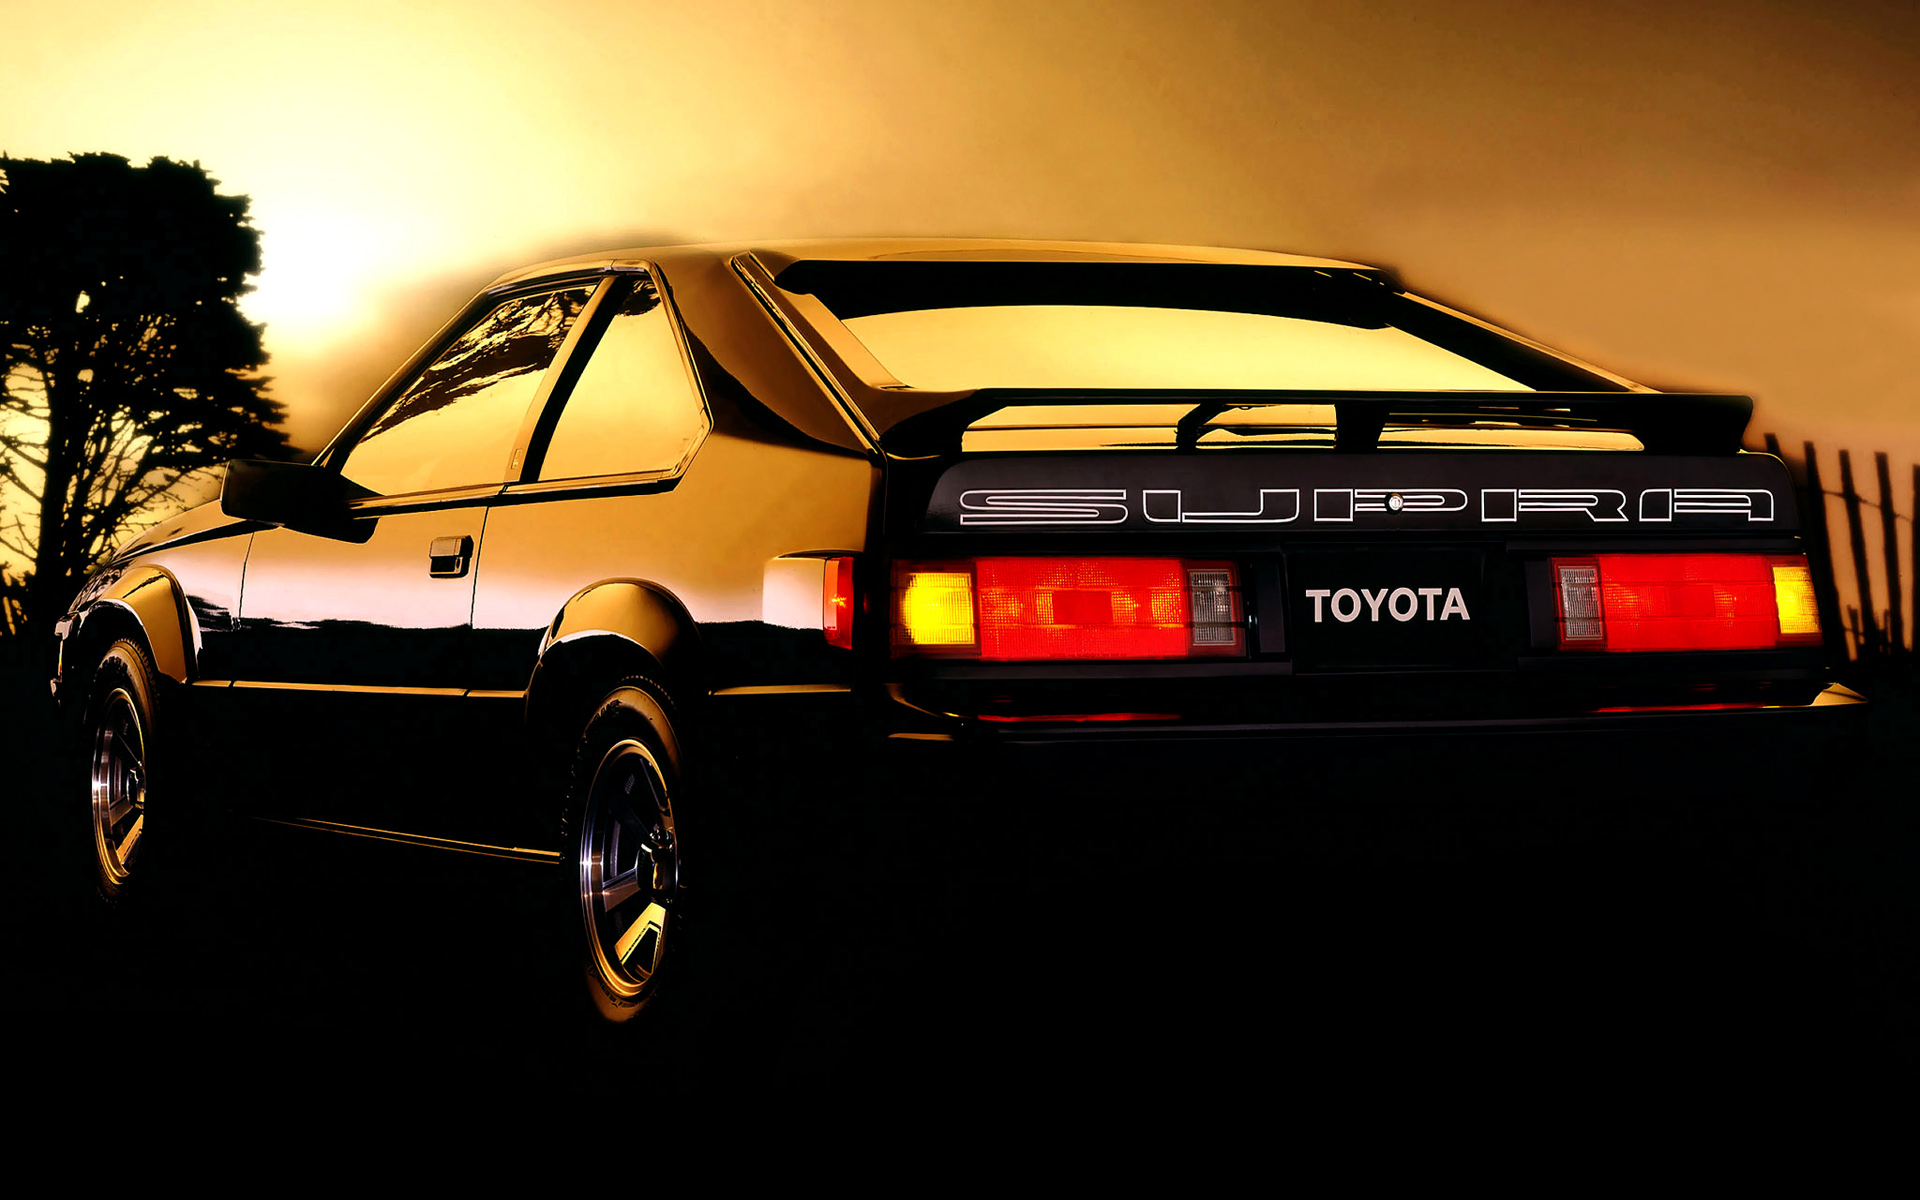  1984 Toyota Celica Supra Wallpaper.